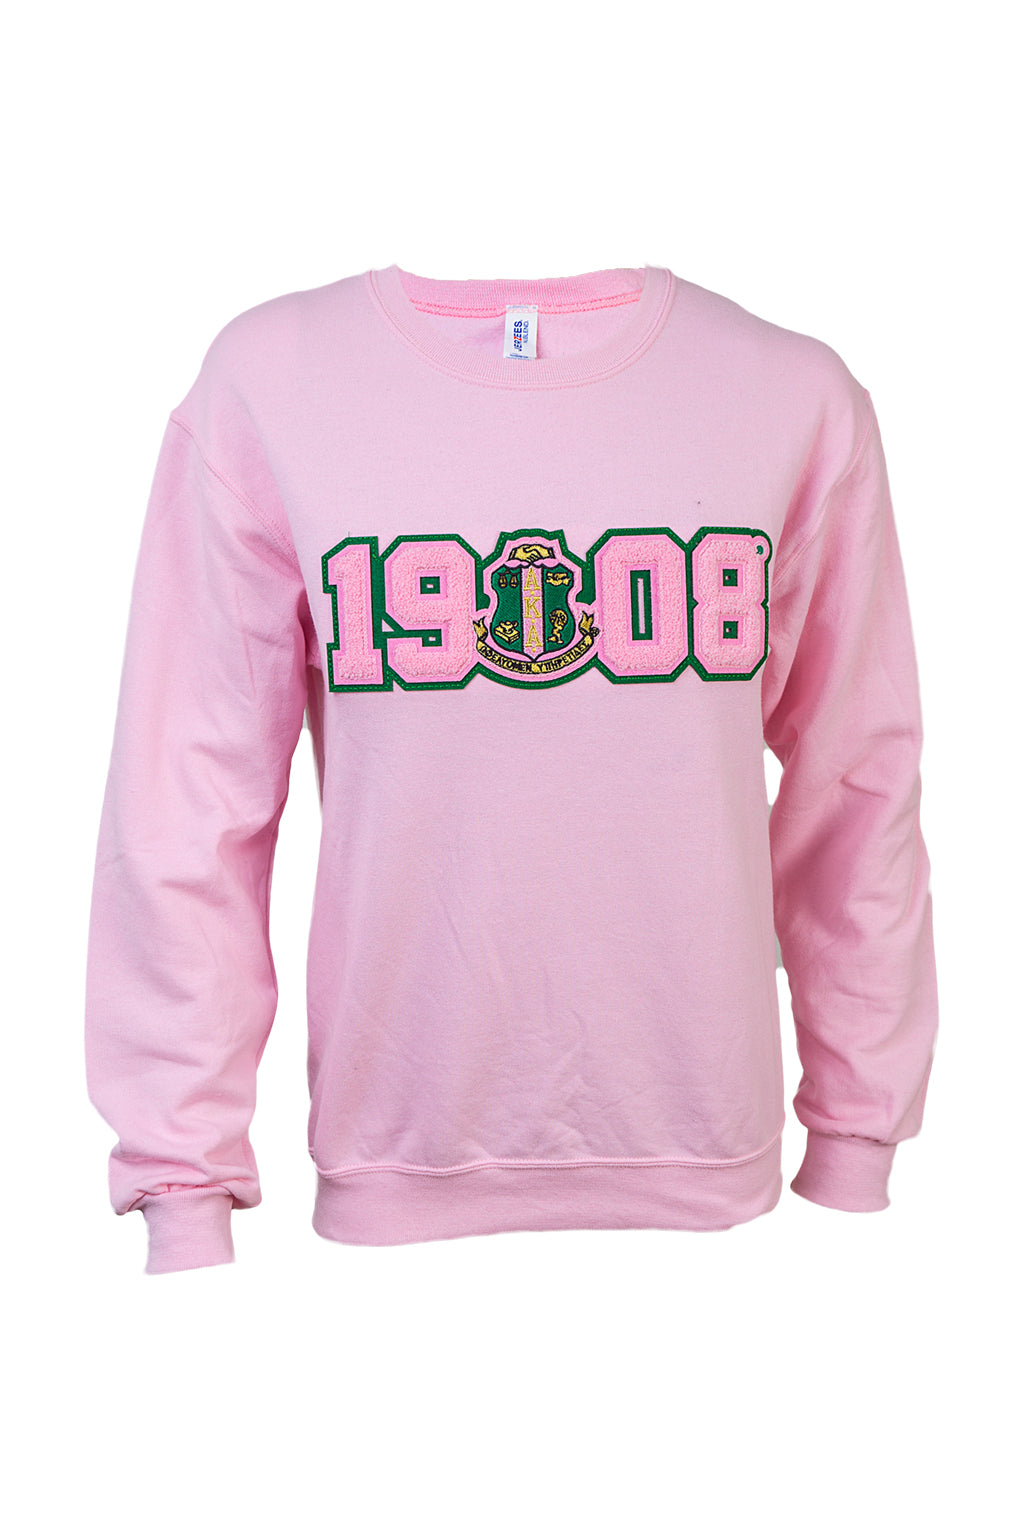 AKA Pink 1908 Sweatshirt